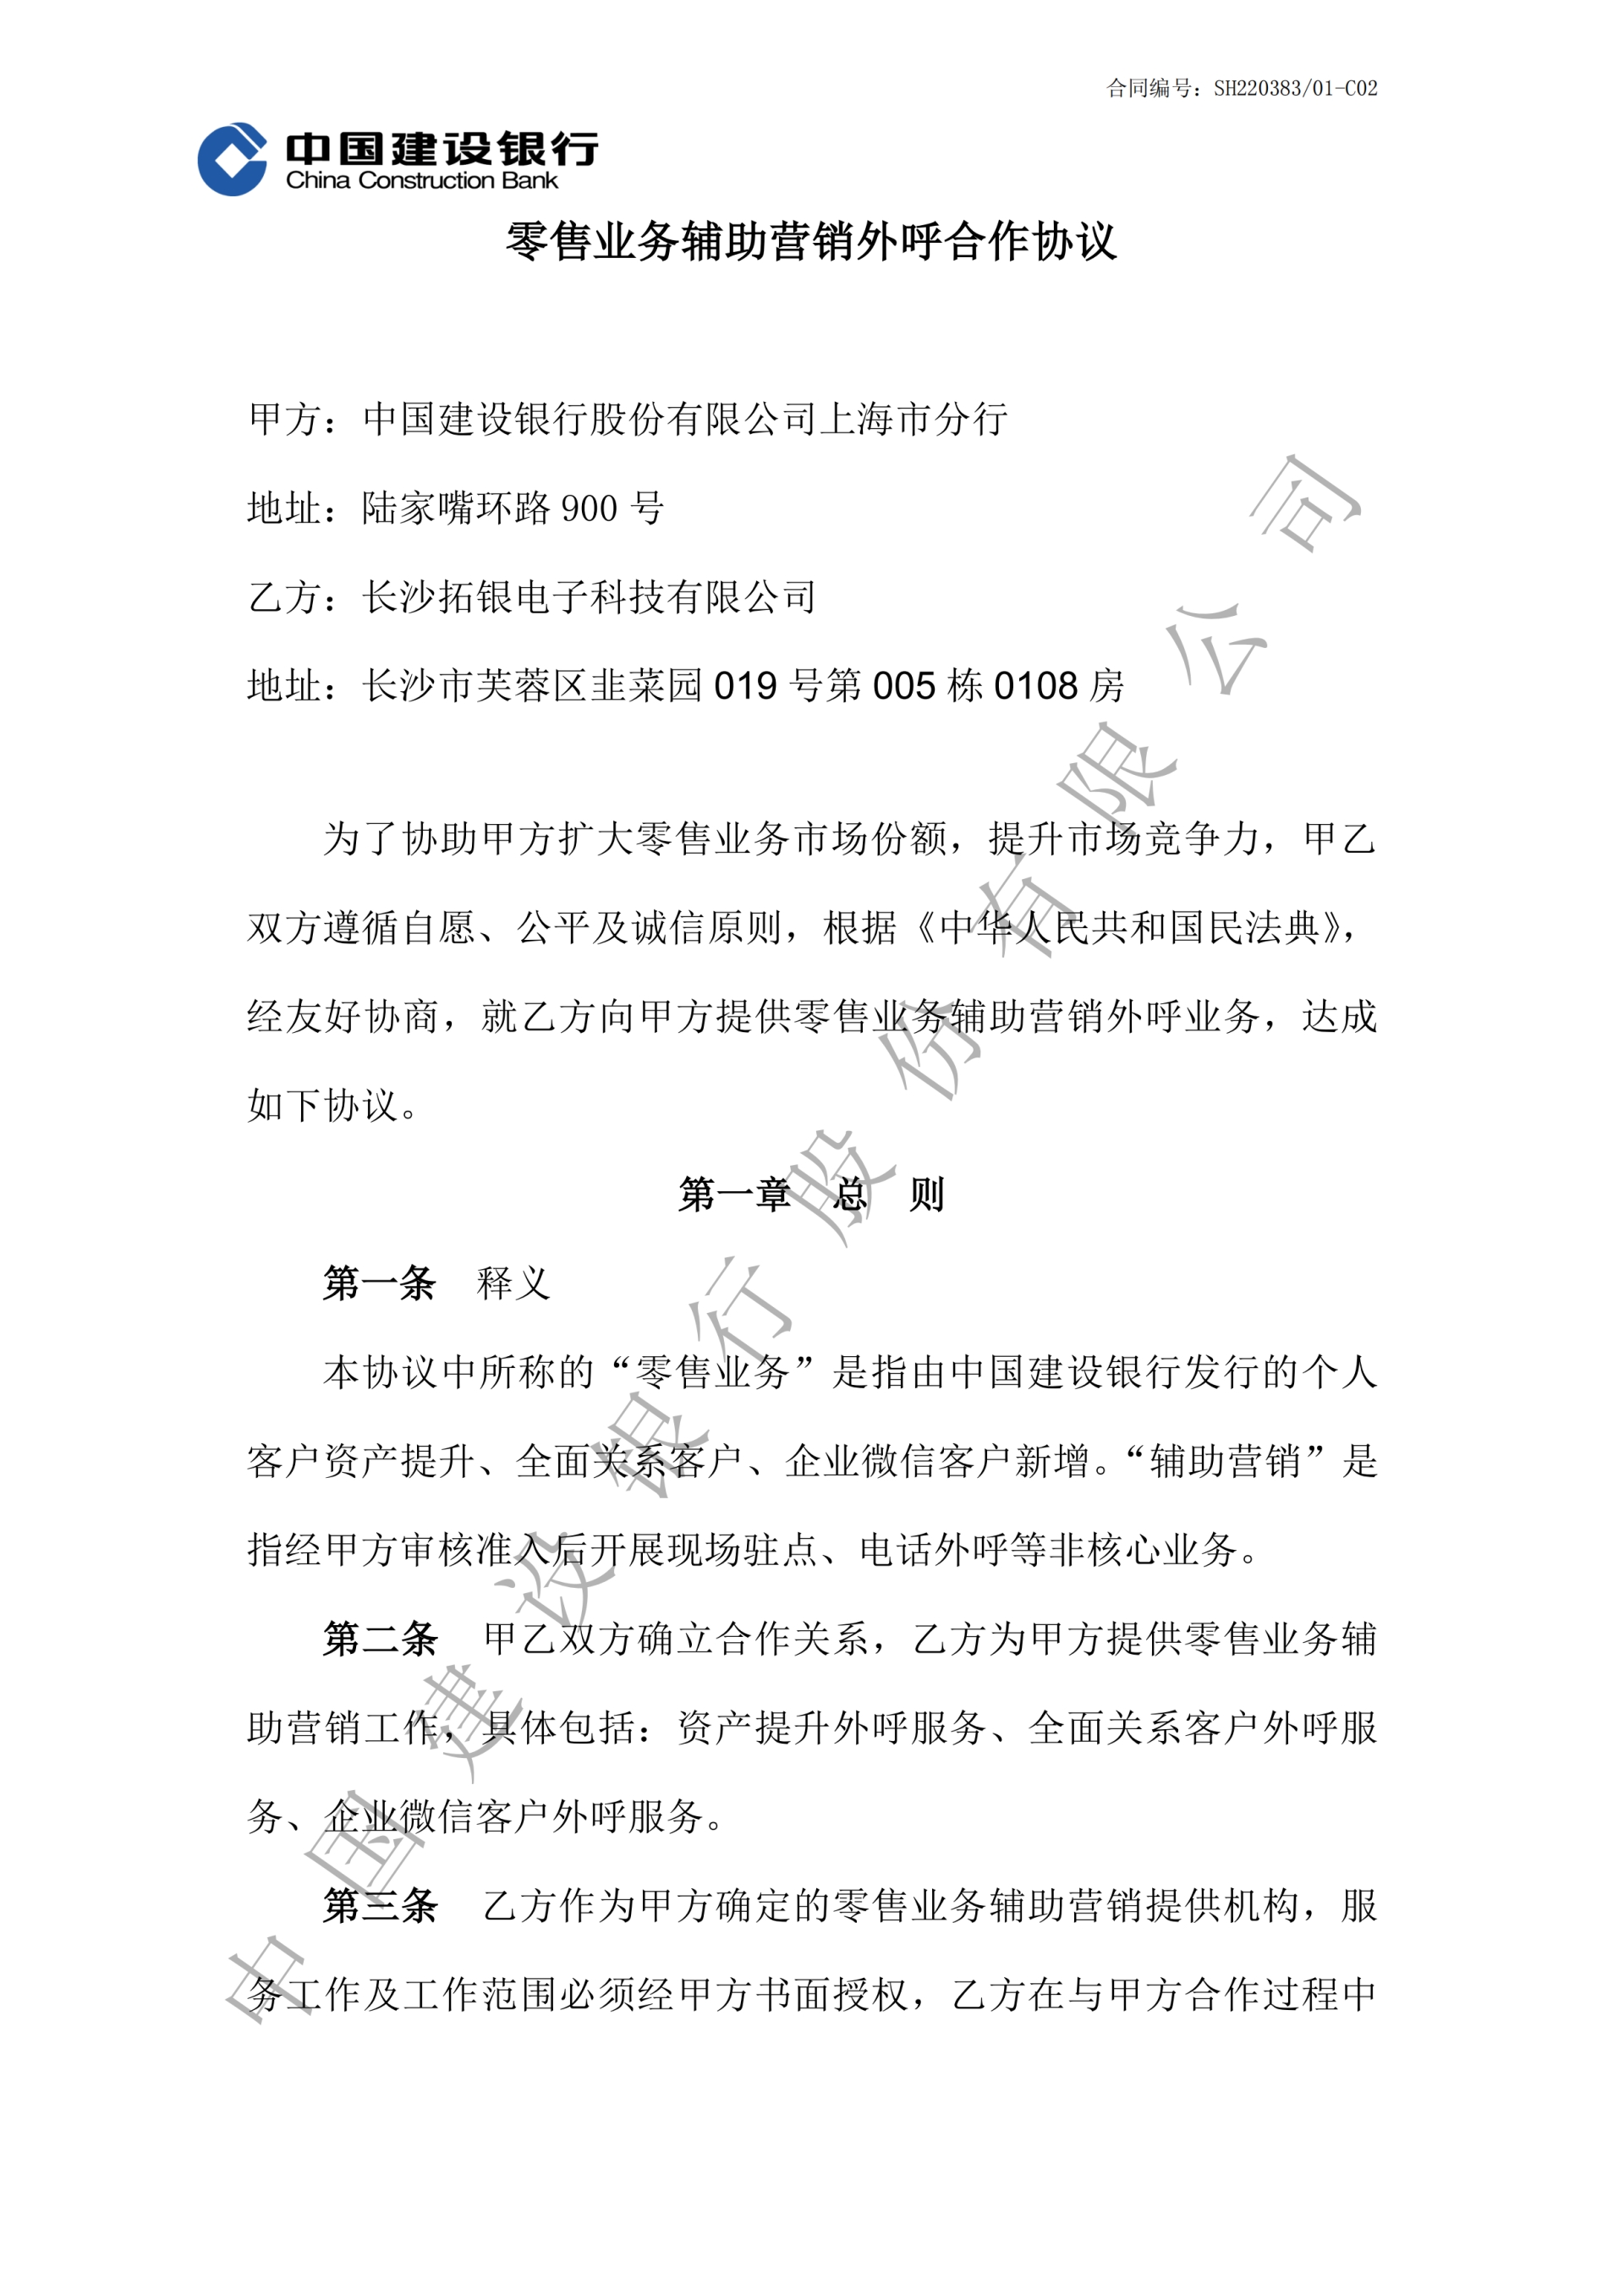 上海市建行零售业务辅助营销外呼合作协议-副本_00.png